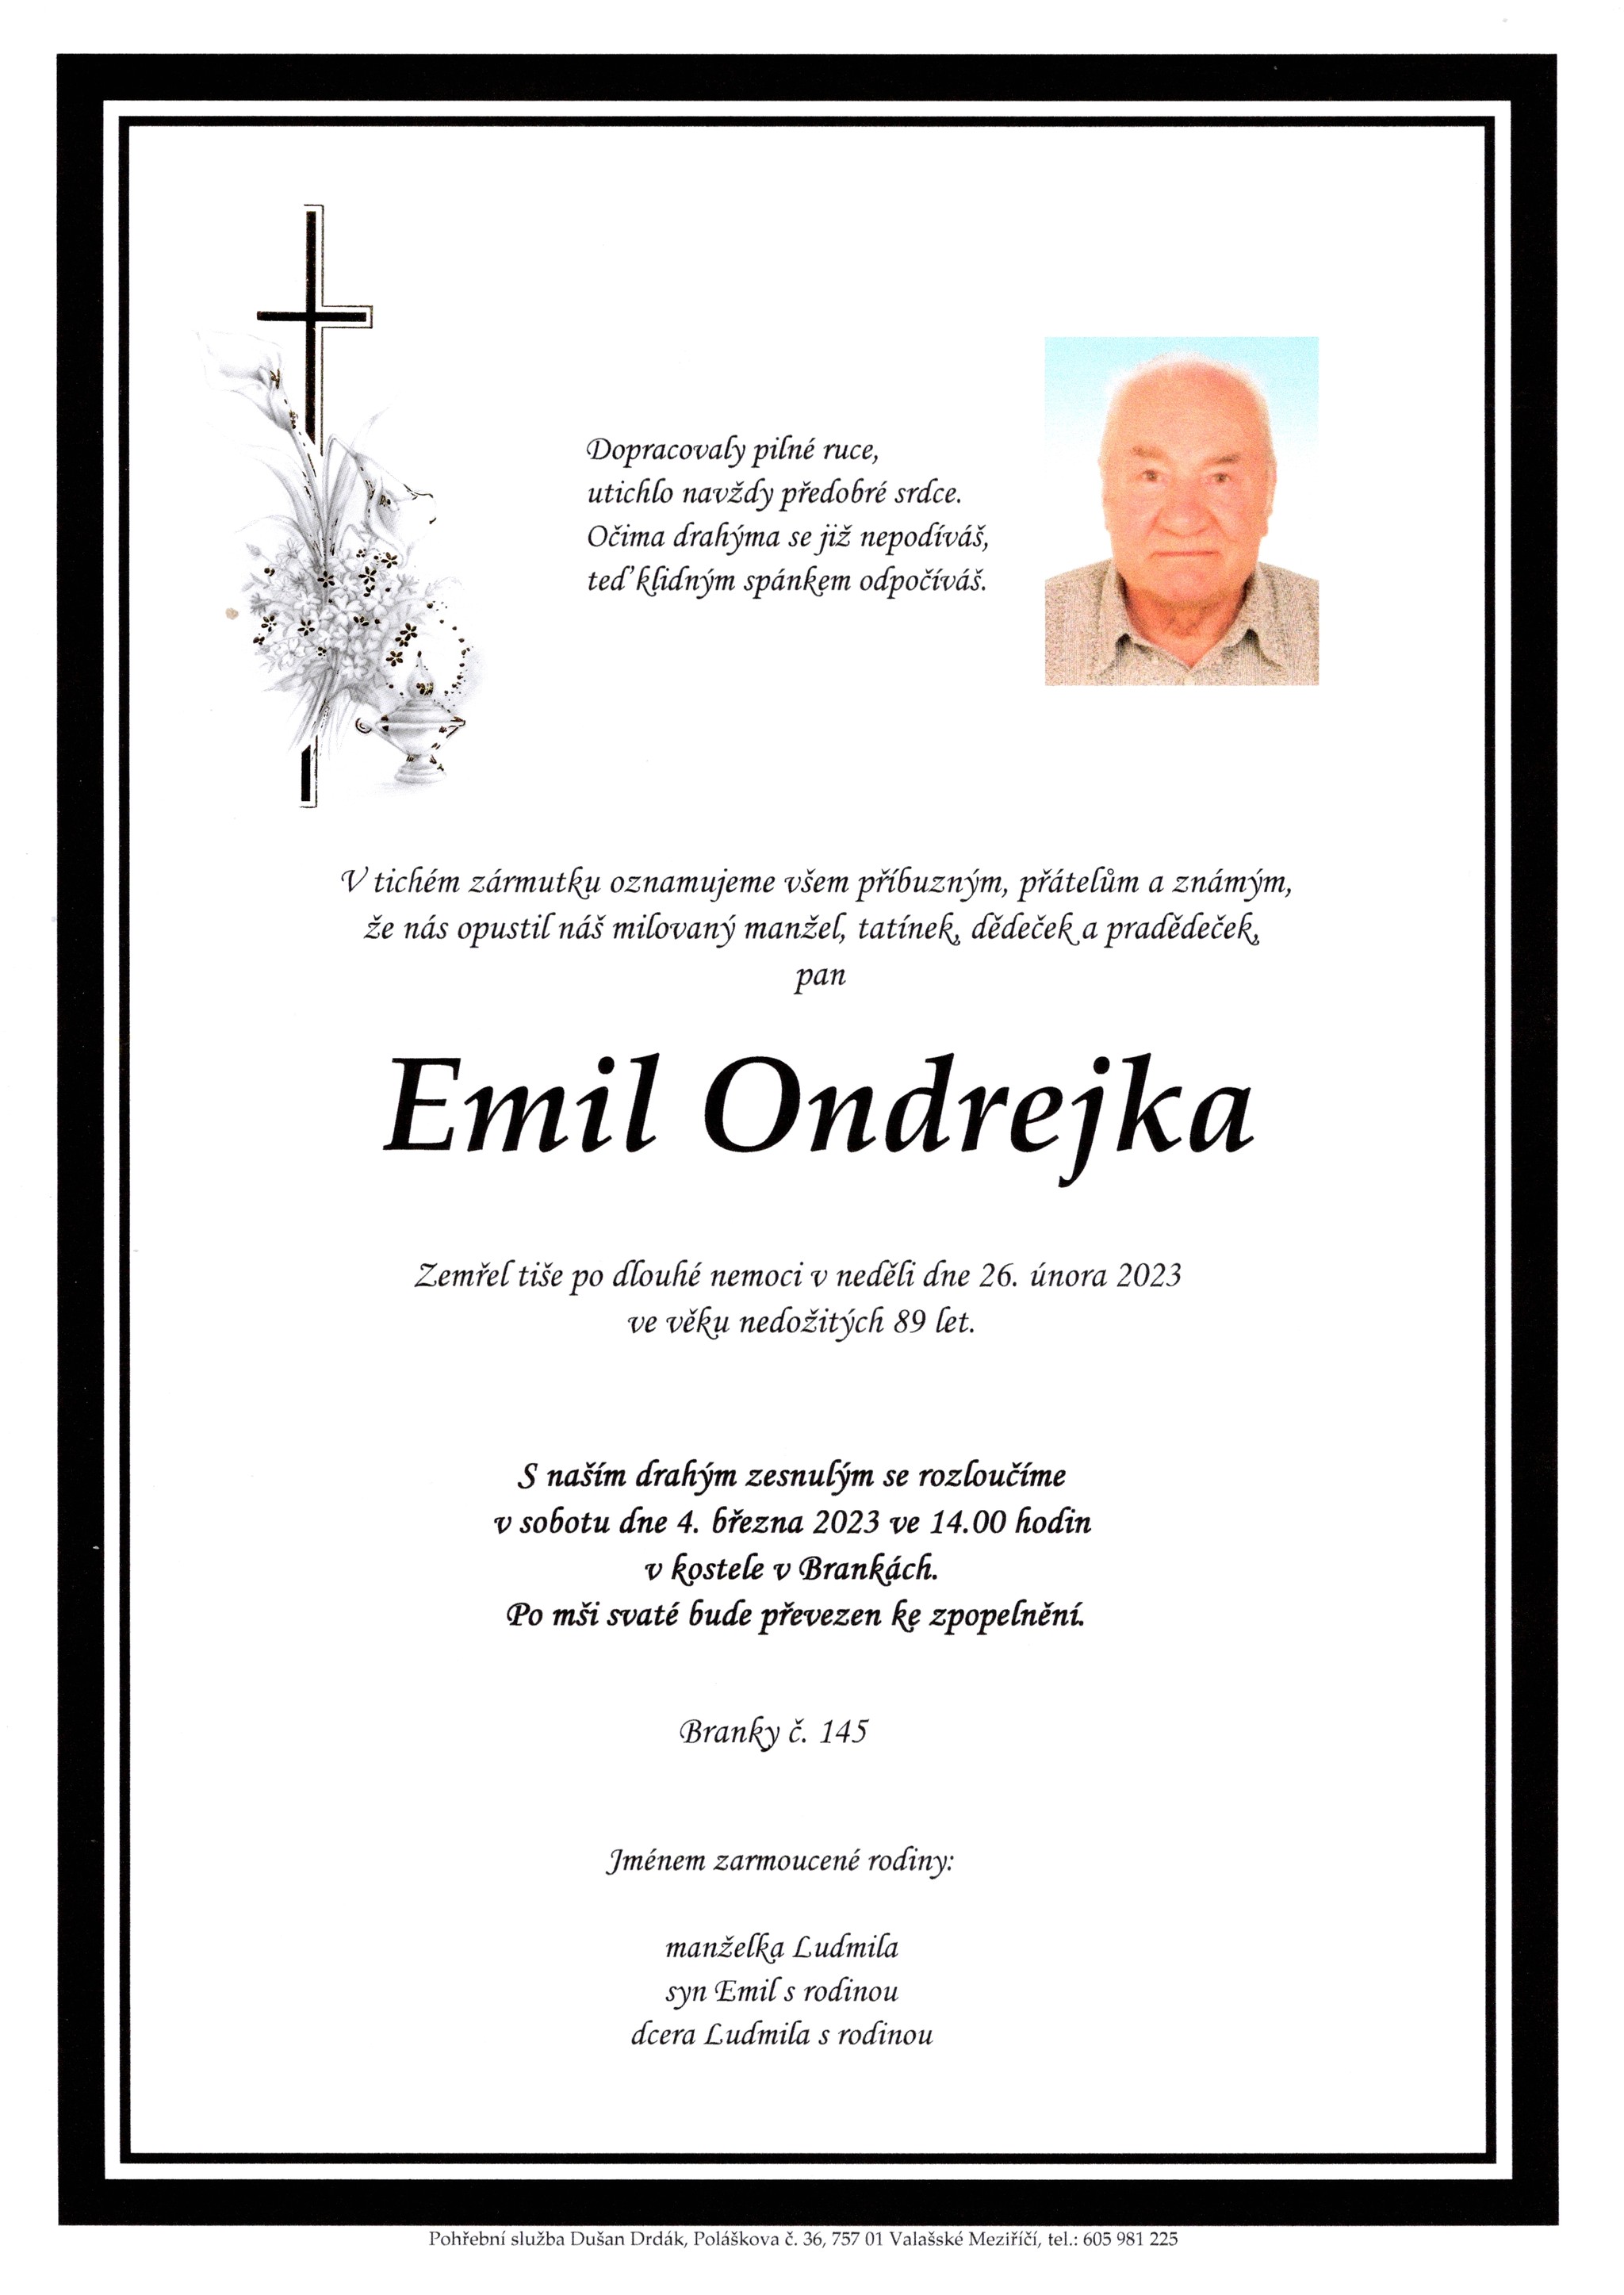 Emil Ondrejka